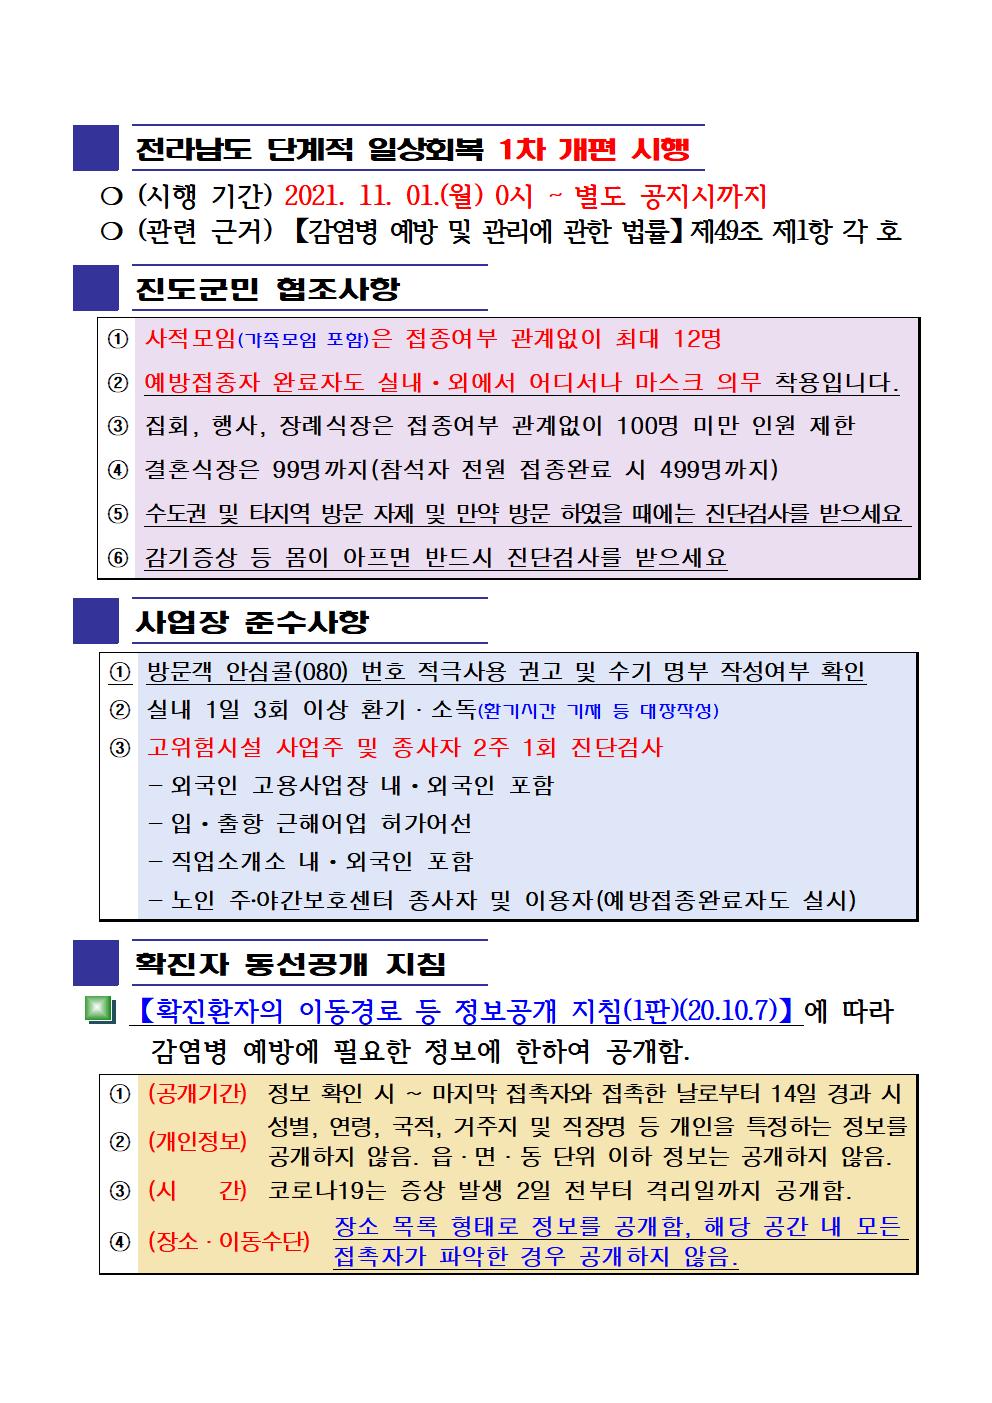 2021년 코로나 19 대응 일일상황보고(11월 20일 24시 기준) 첨부#2